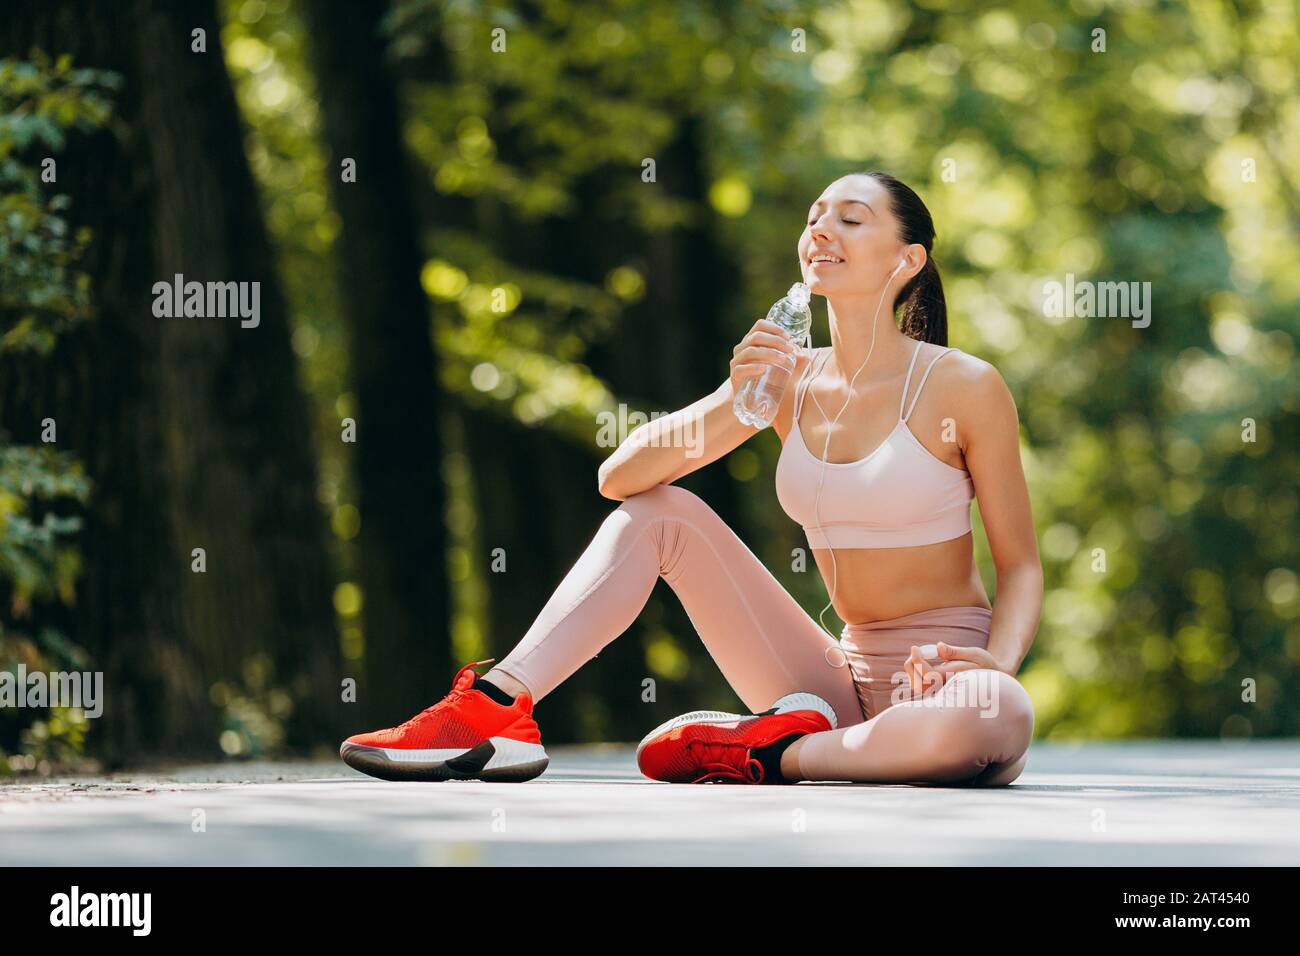 Una donna bruna beve un'acqua negli auricolari seduti nel parco all'aperto - immagine Foto Stock